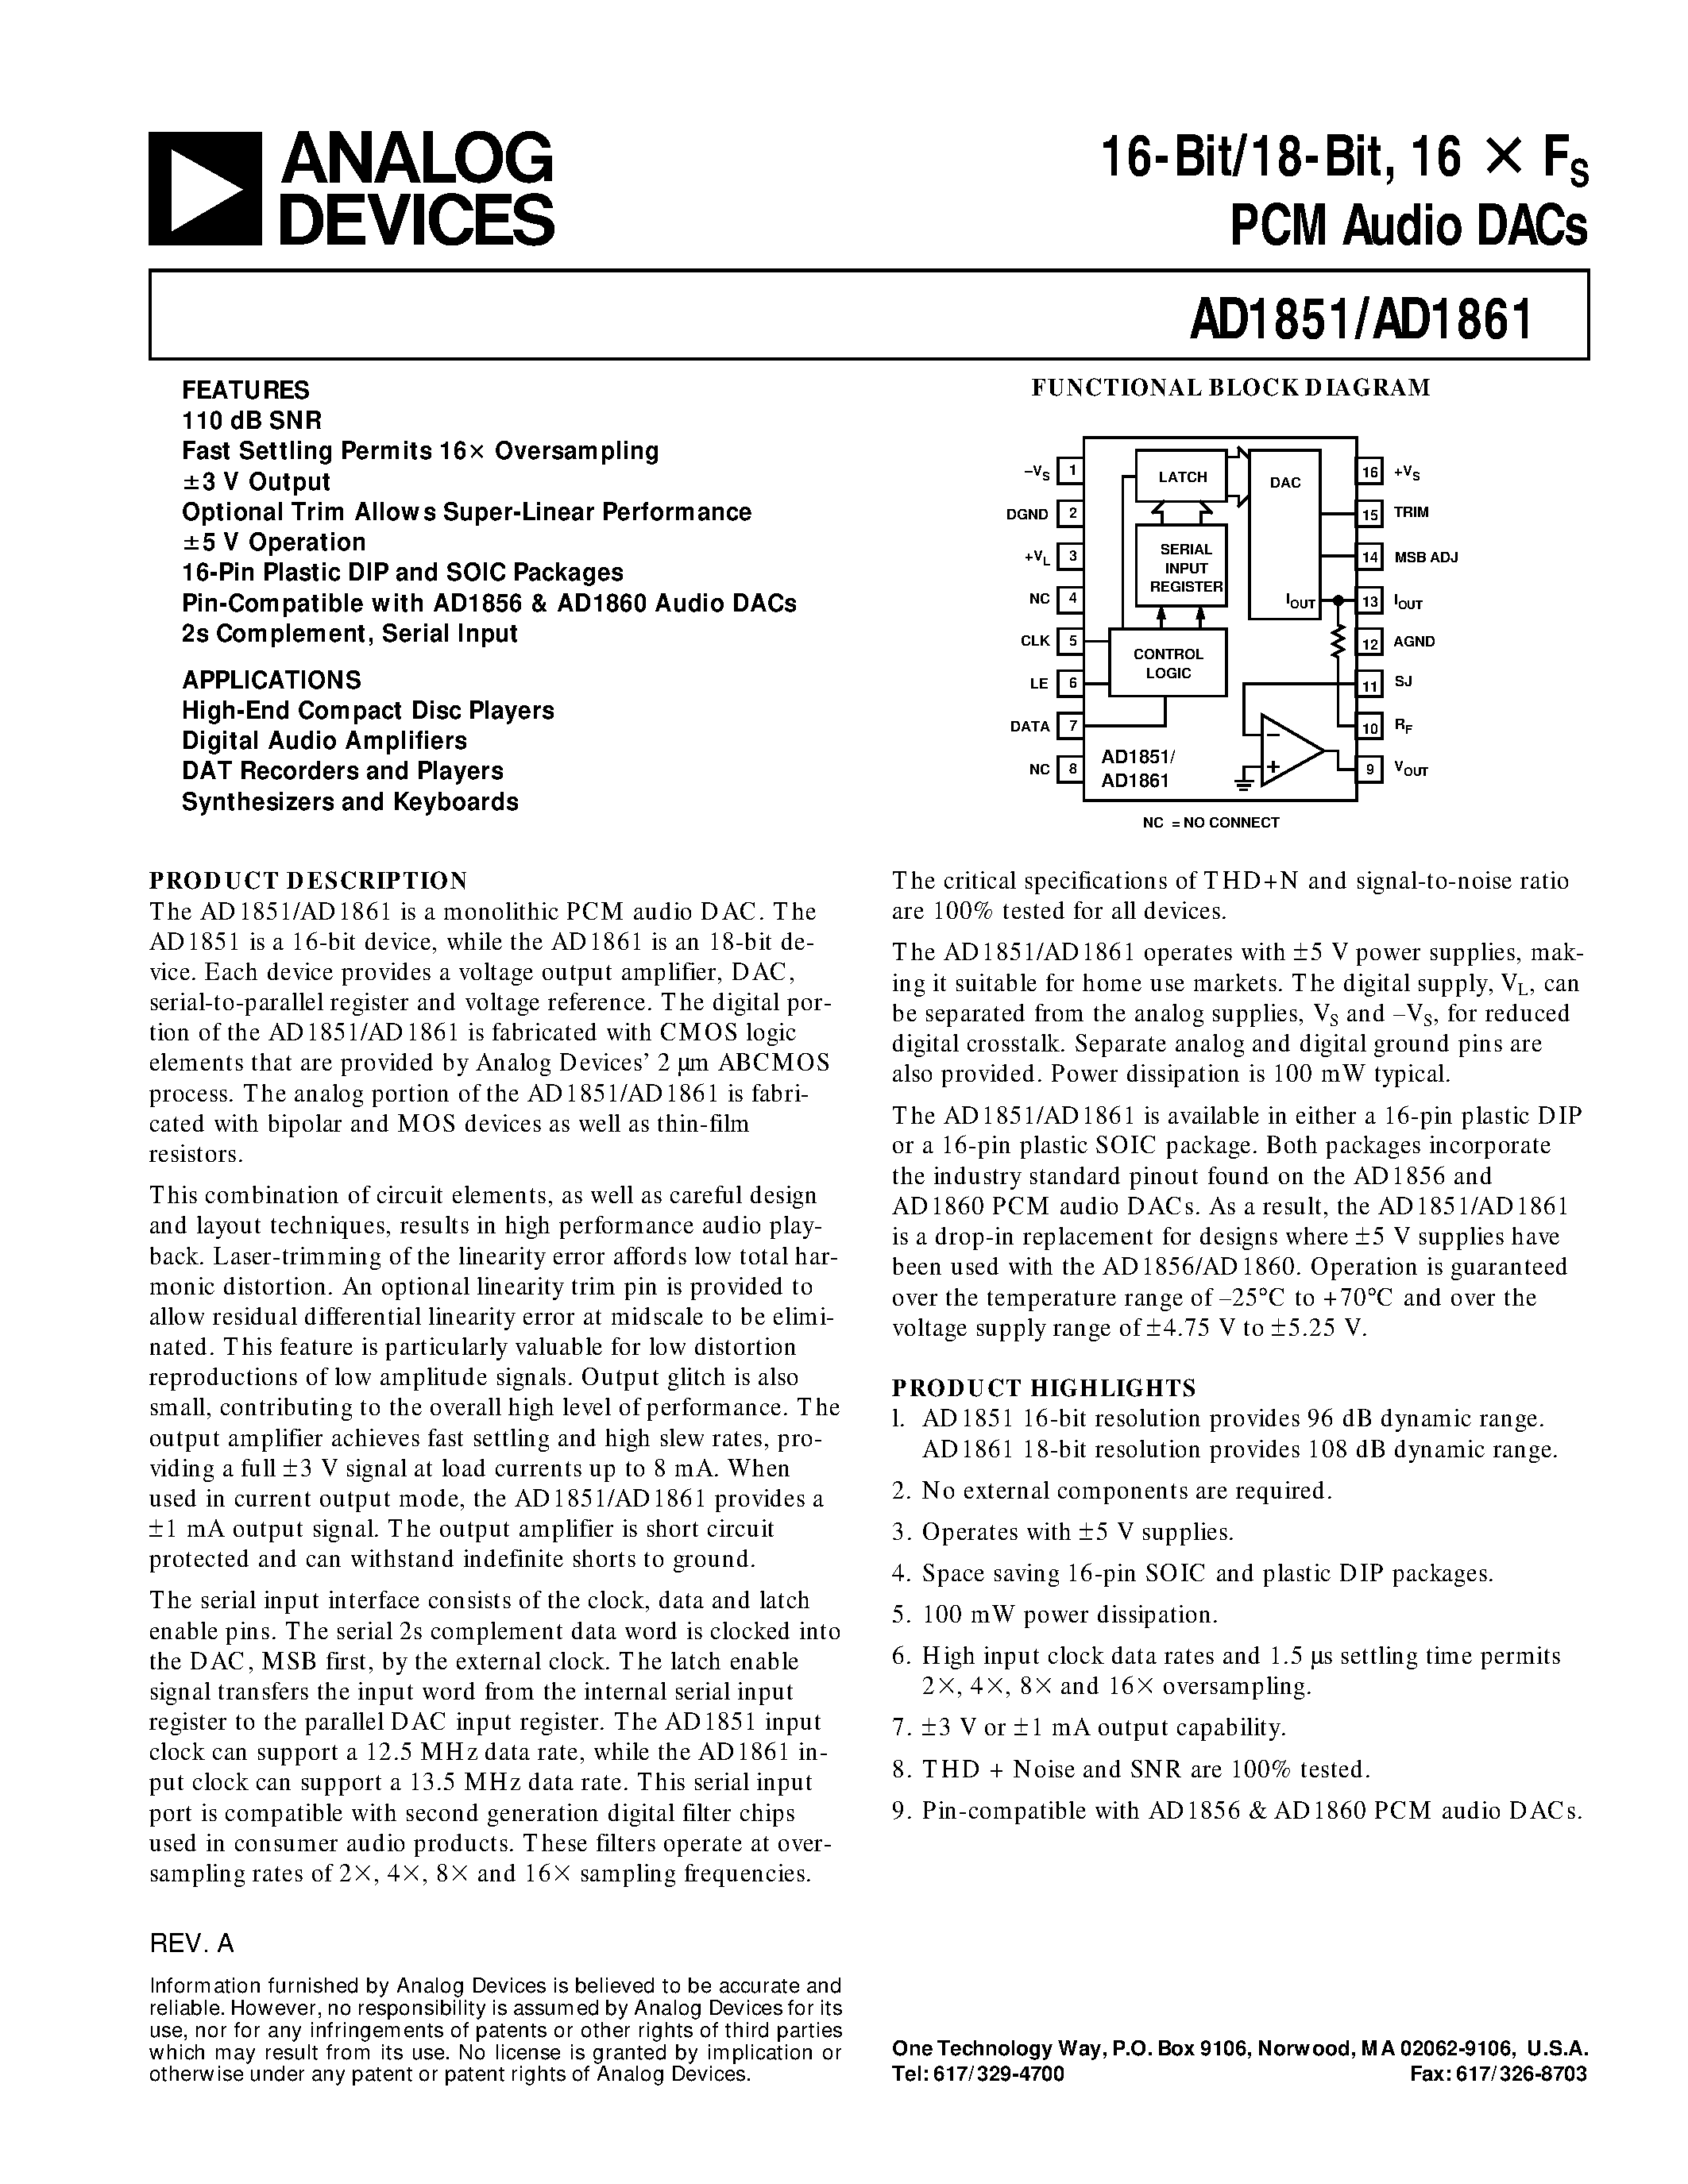 Даташит AD1851N-J - 16-Bit/18-Bit/ 16 X Fs PCM Audio DACs страница 1